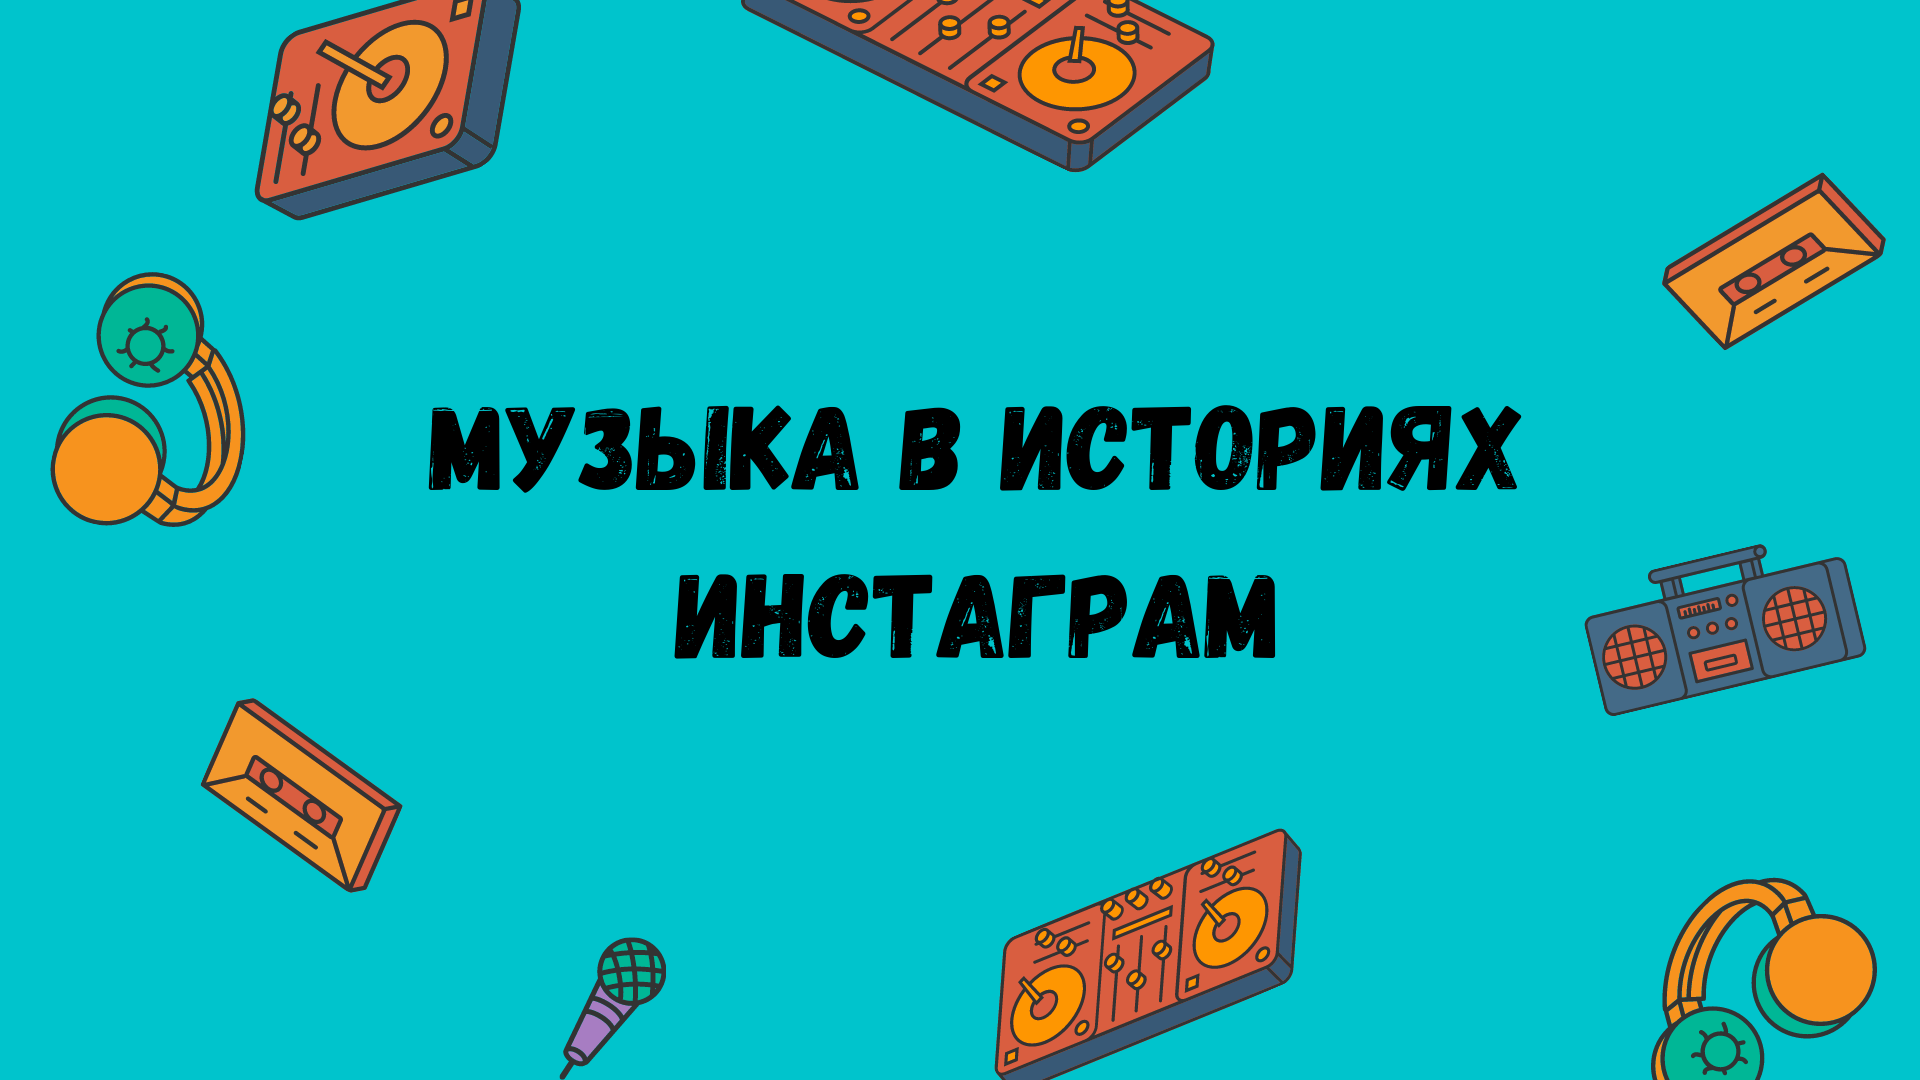 Музыка в историях Инстаграм: новинка для русскоязычных пользователей